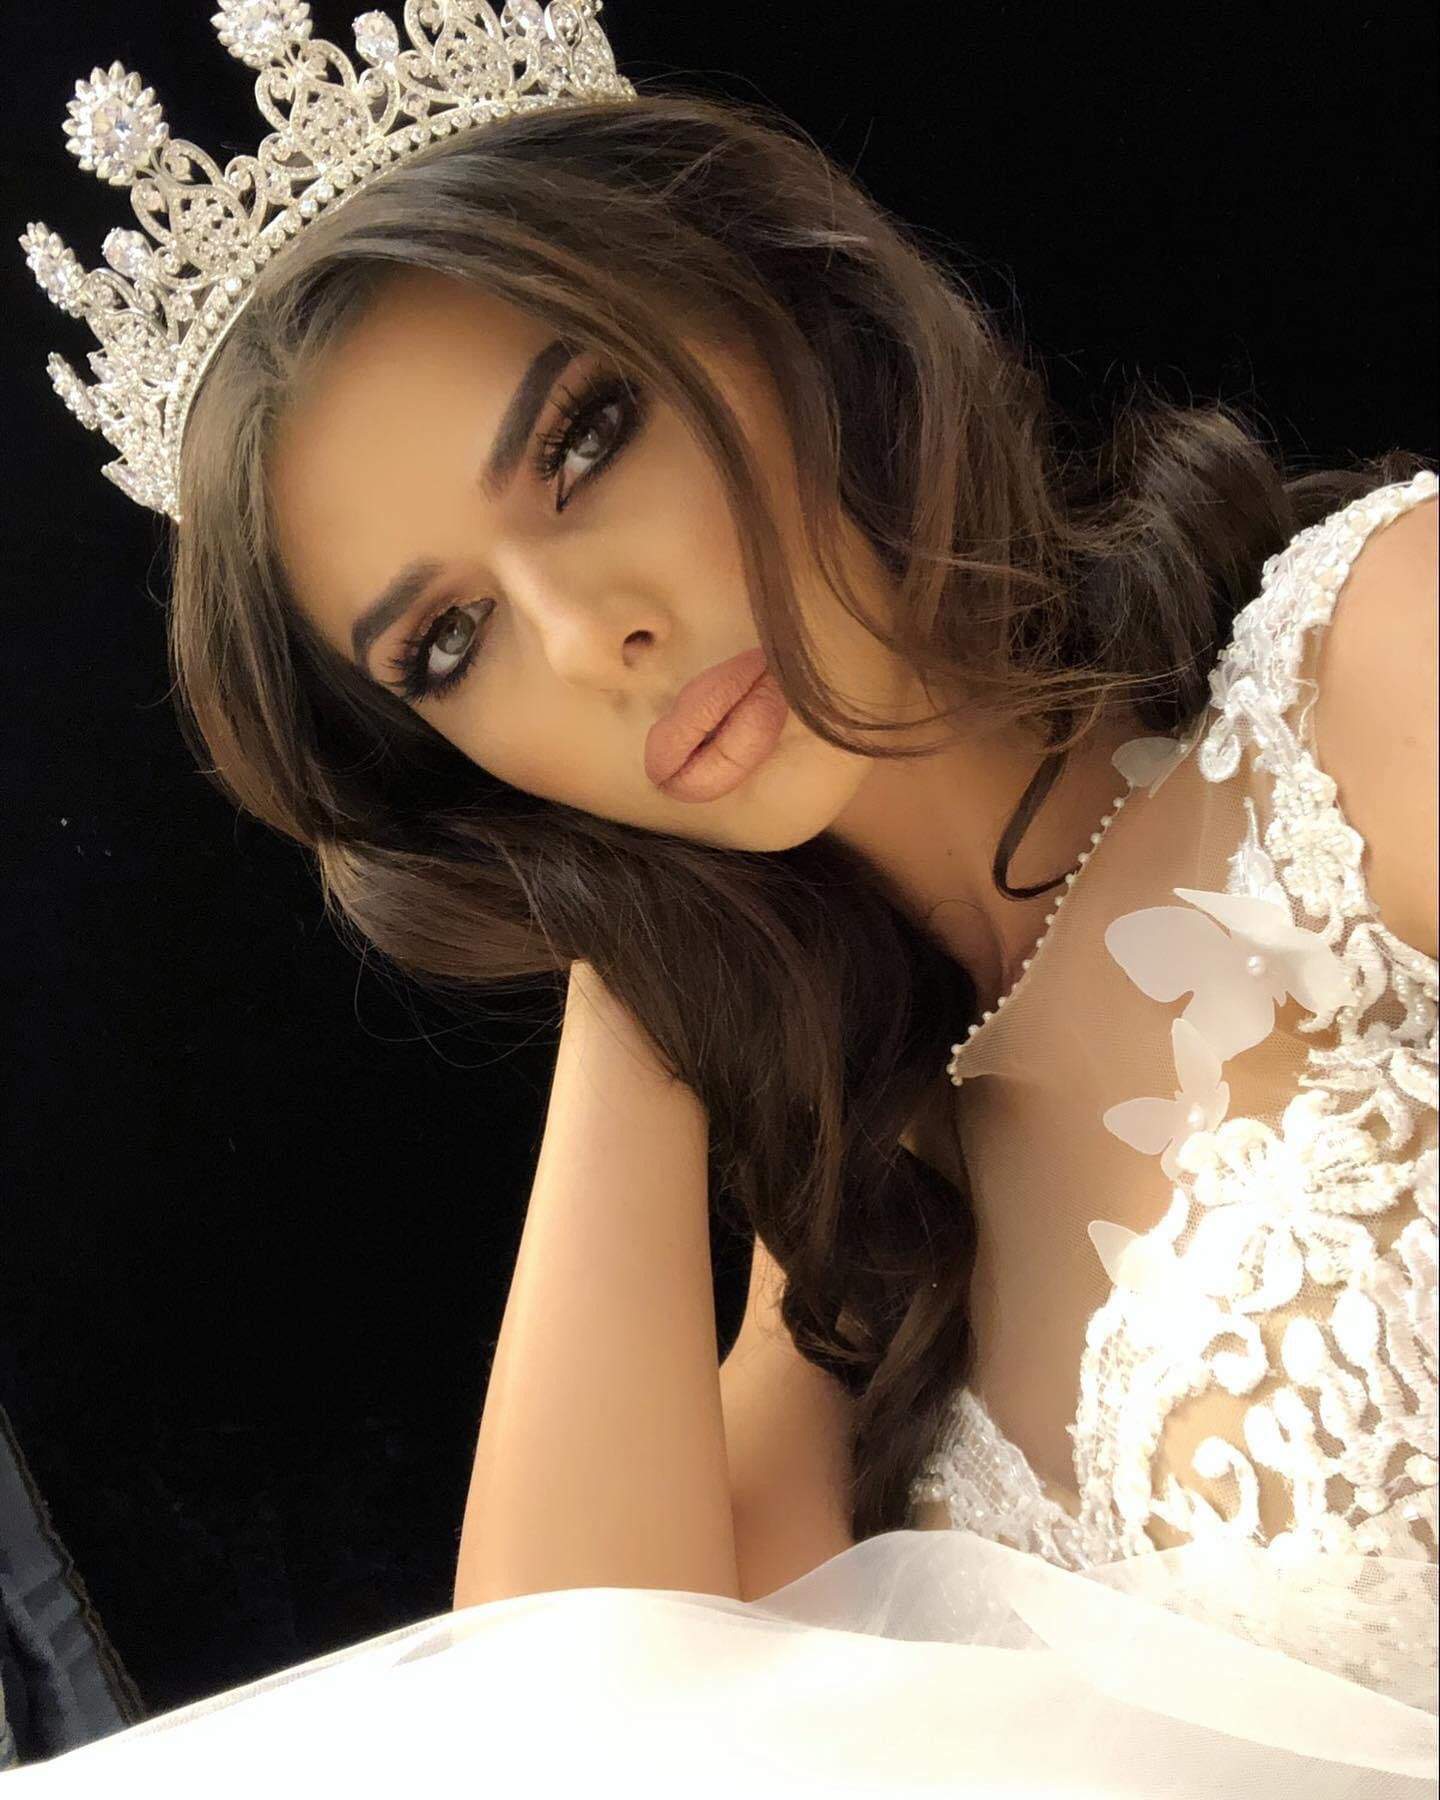 Cum arăta Ioana Filimon în 2016, când a devenit Miss Romania